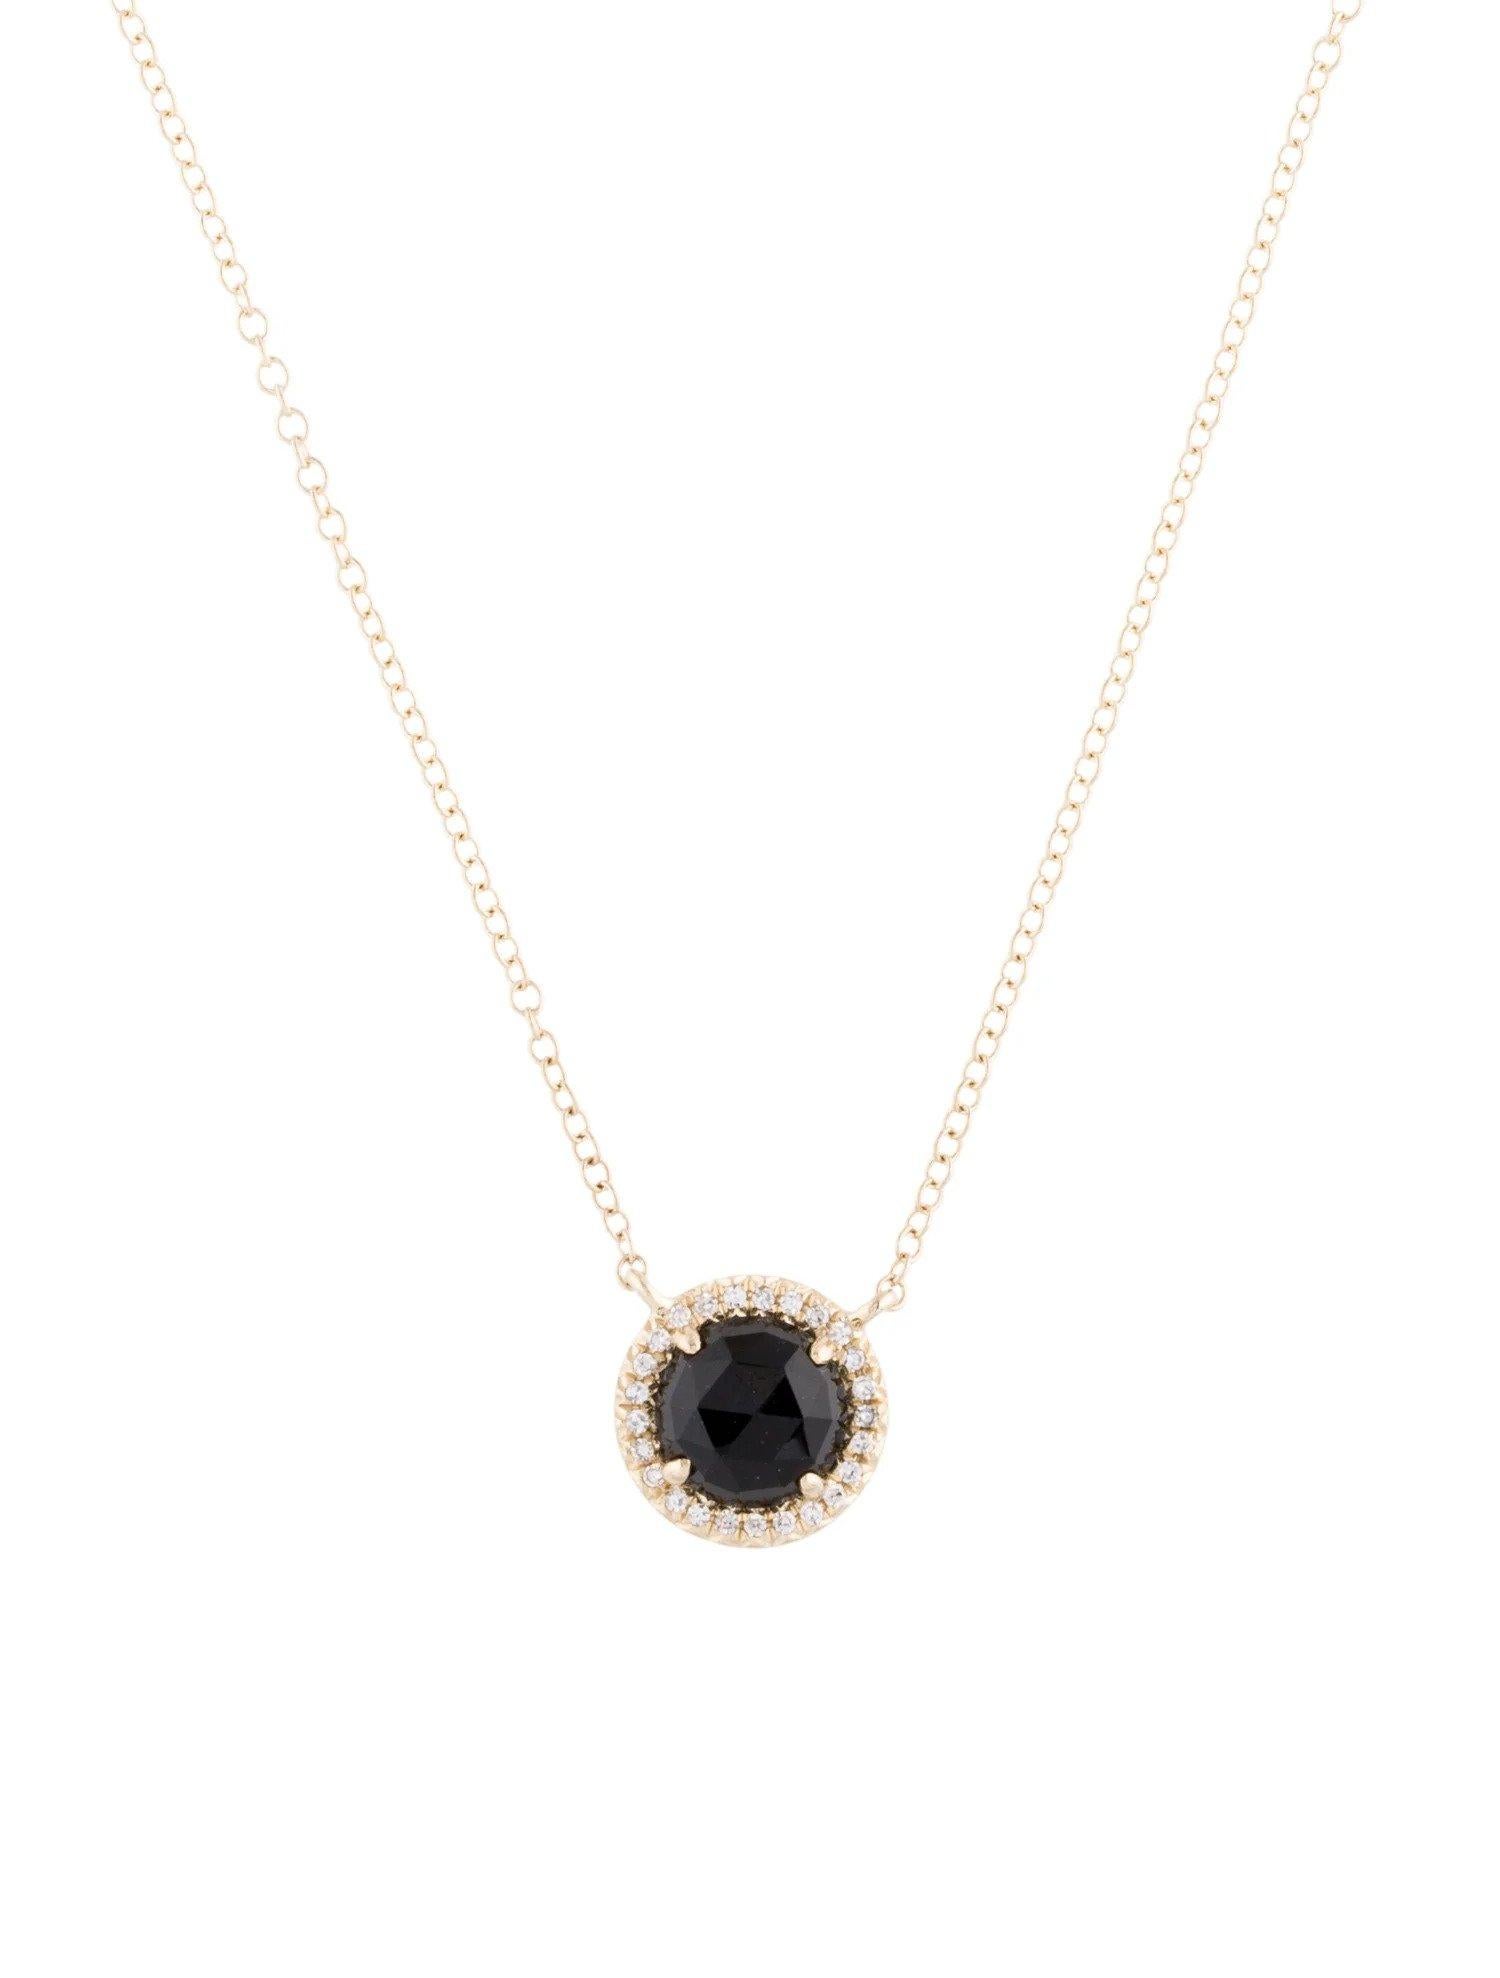 Ce pendentif en onyx noir et diamants est un accessoire étonnant et intemporel qui peut ajouter une touche de glamour et de sophistication à n'importe quelle tenue. 

Ce pendentif présente un onyx noir rond de 1,00 carat, avec un halo de diamants